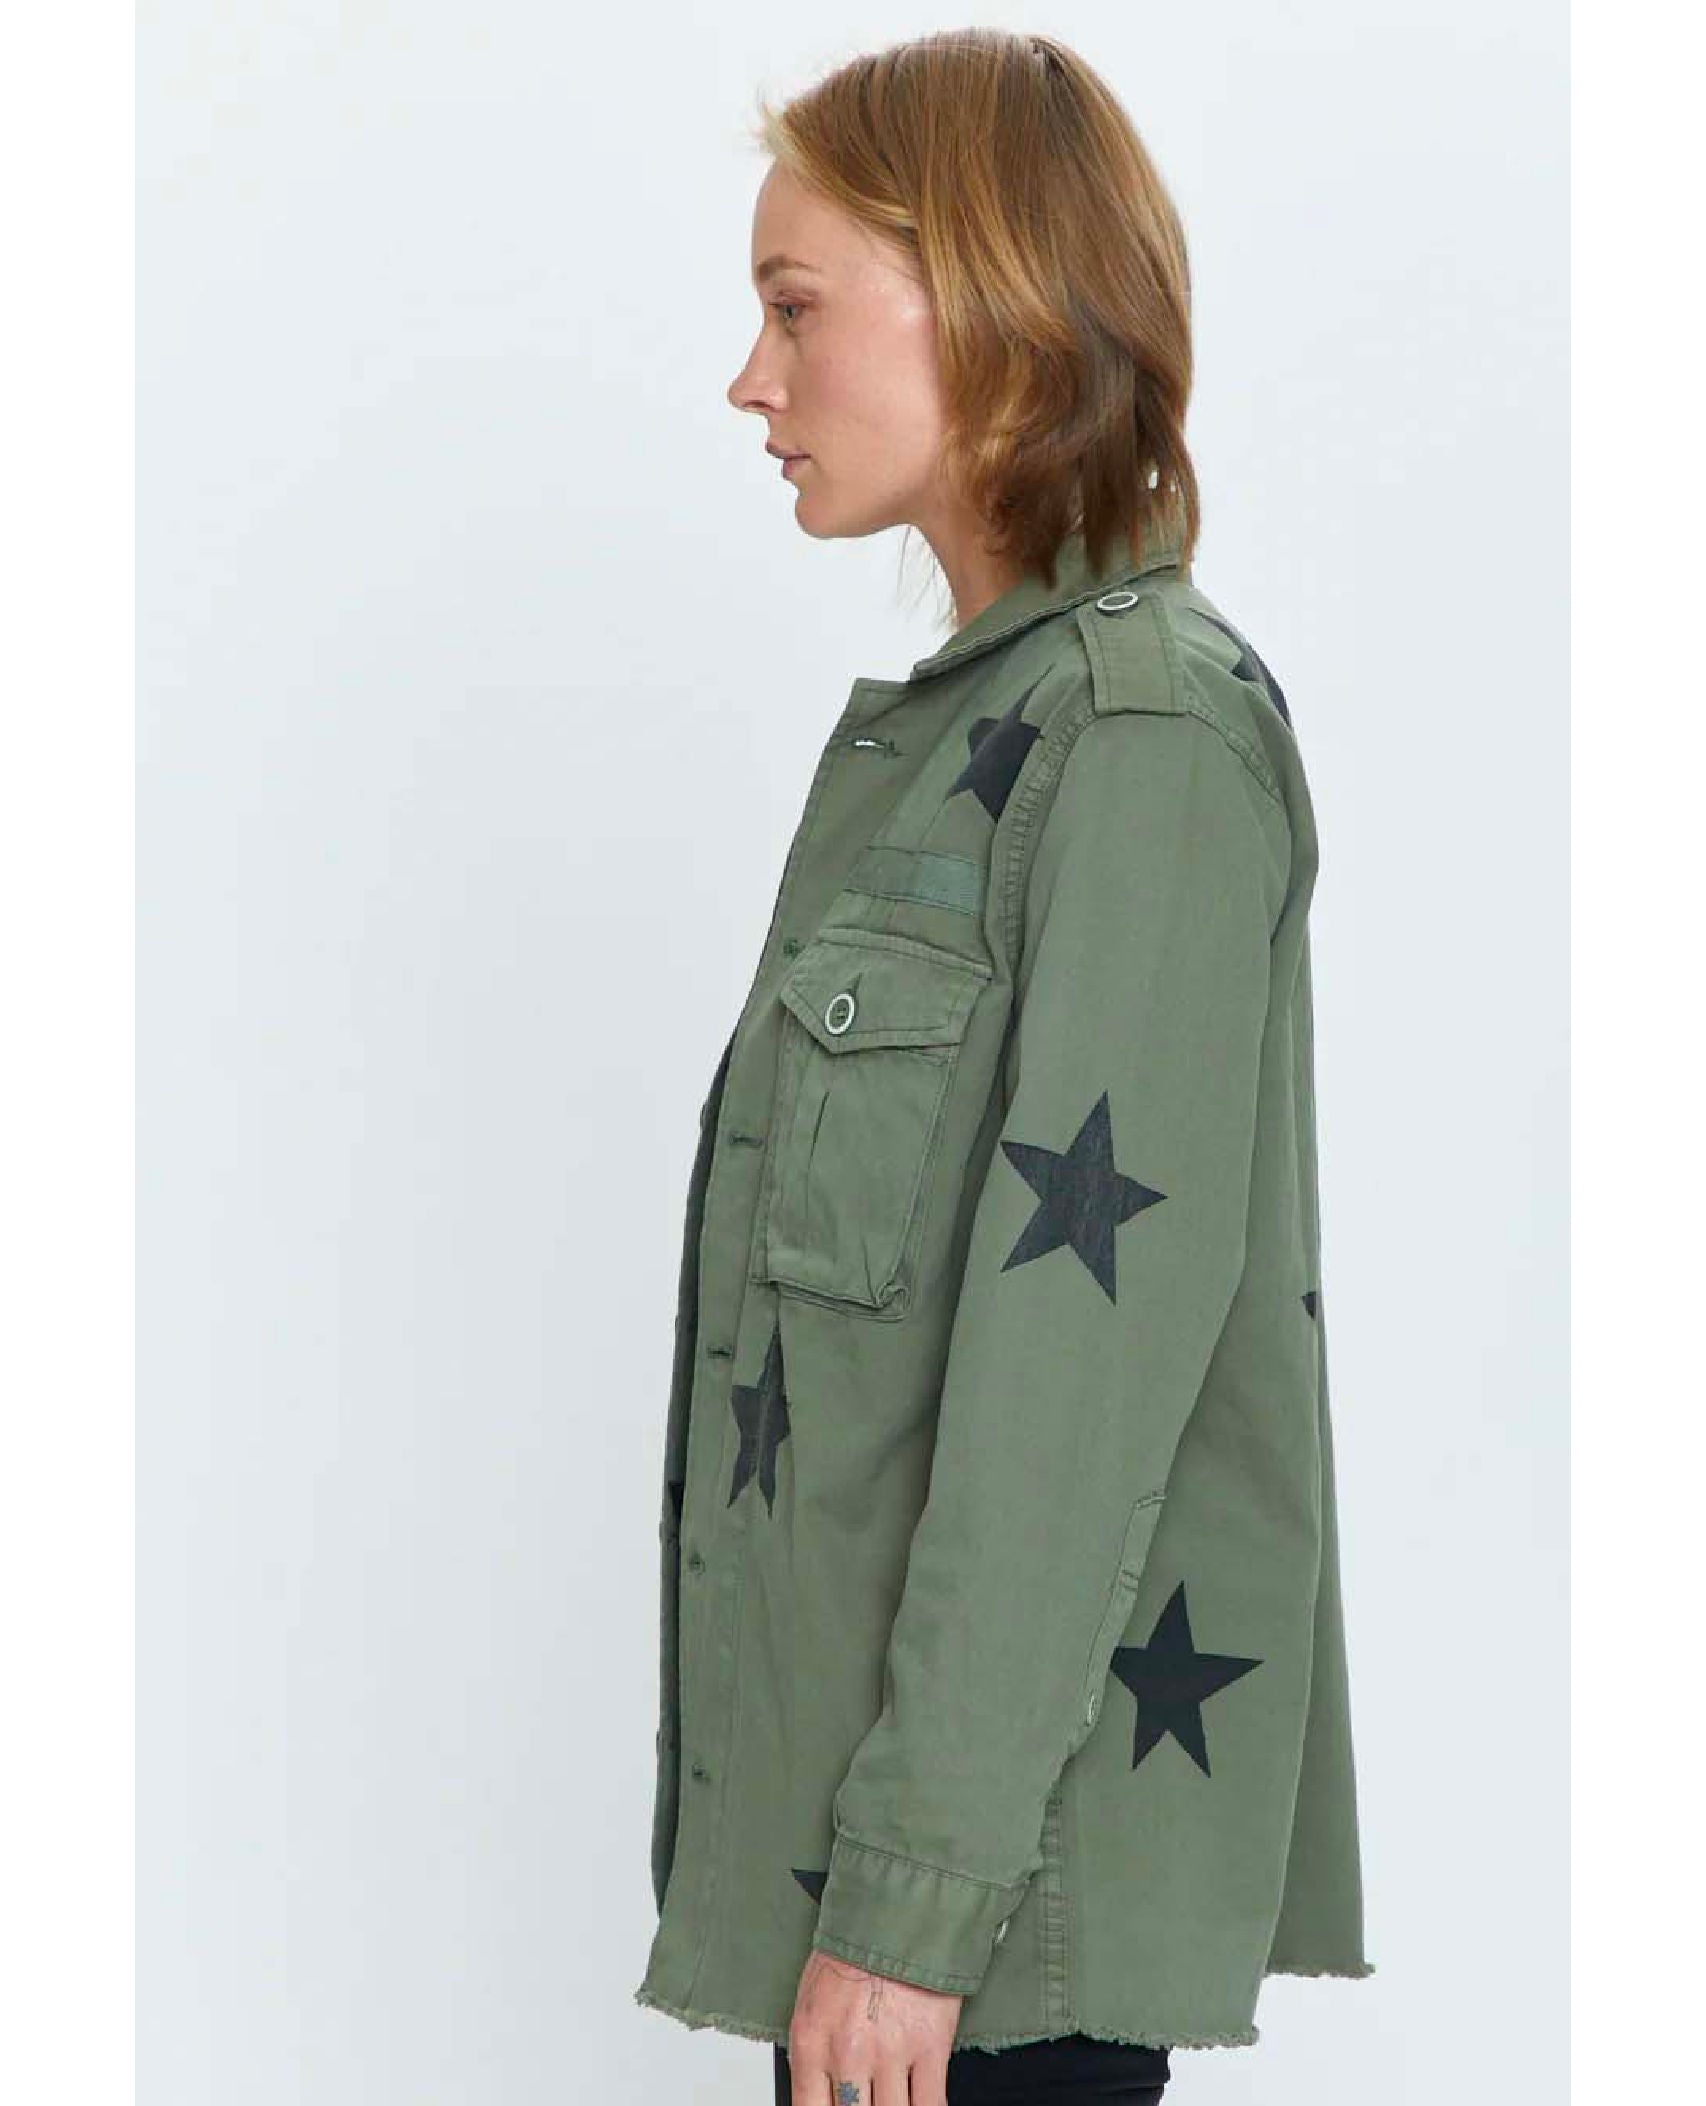 Camilo Military Star Jacket